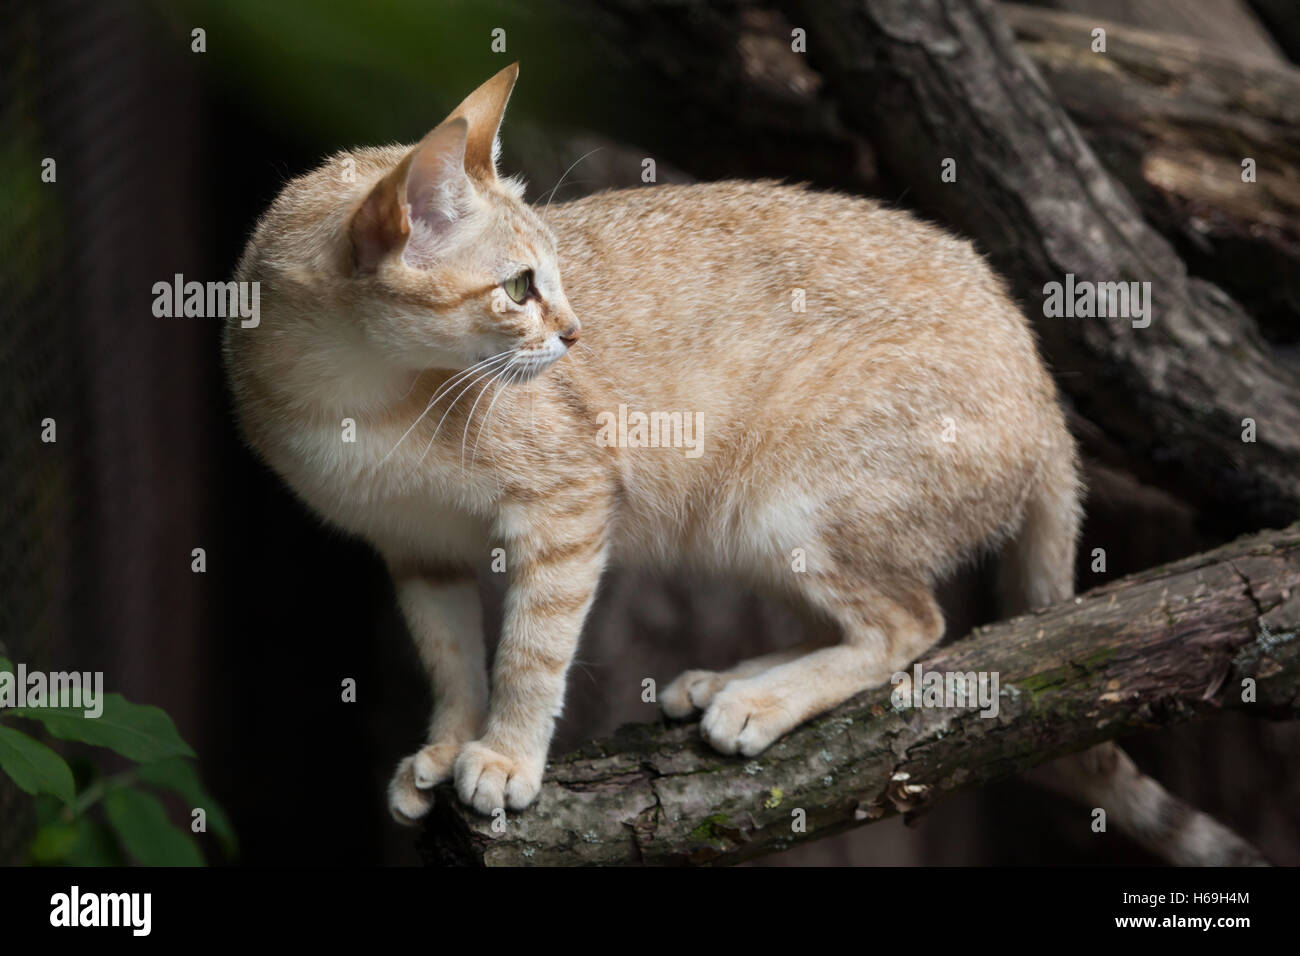 Arabian wildcat (Felis silvestris gordoni), also known as the Gordon's wildcat. Wildlife animal. Stock Photo